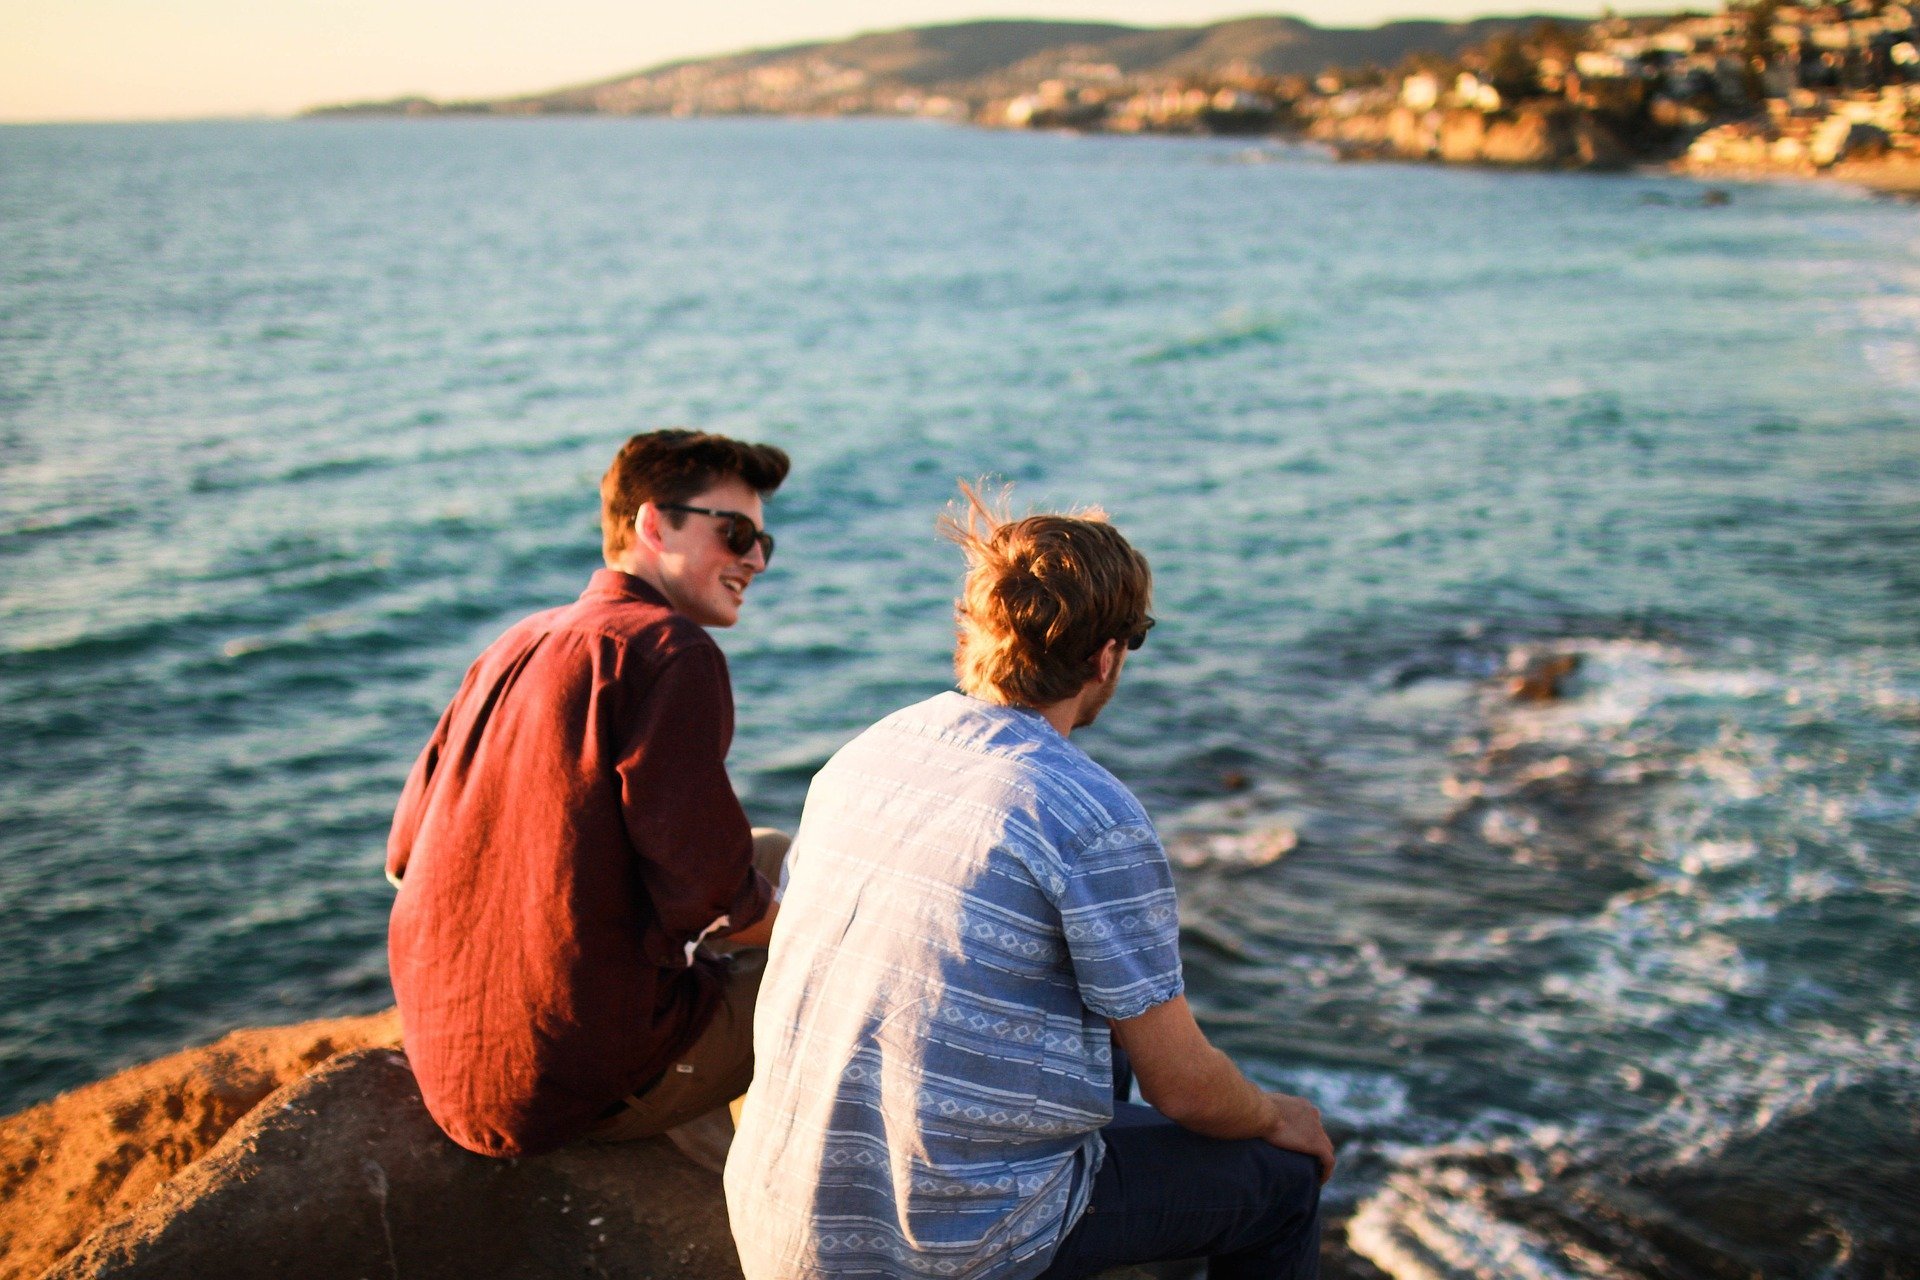 Amigos sentados em pedra perto do mar, rindo e conversando